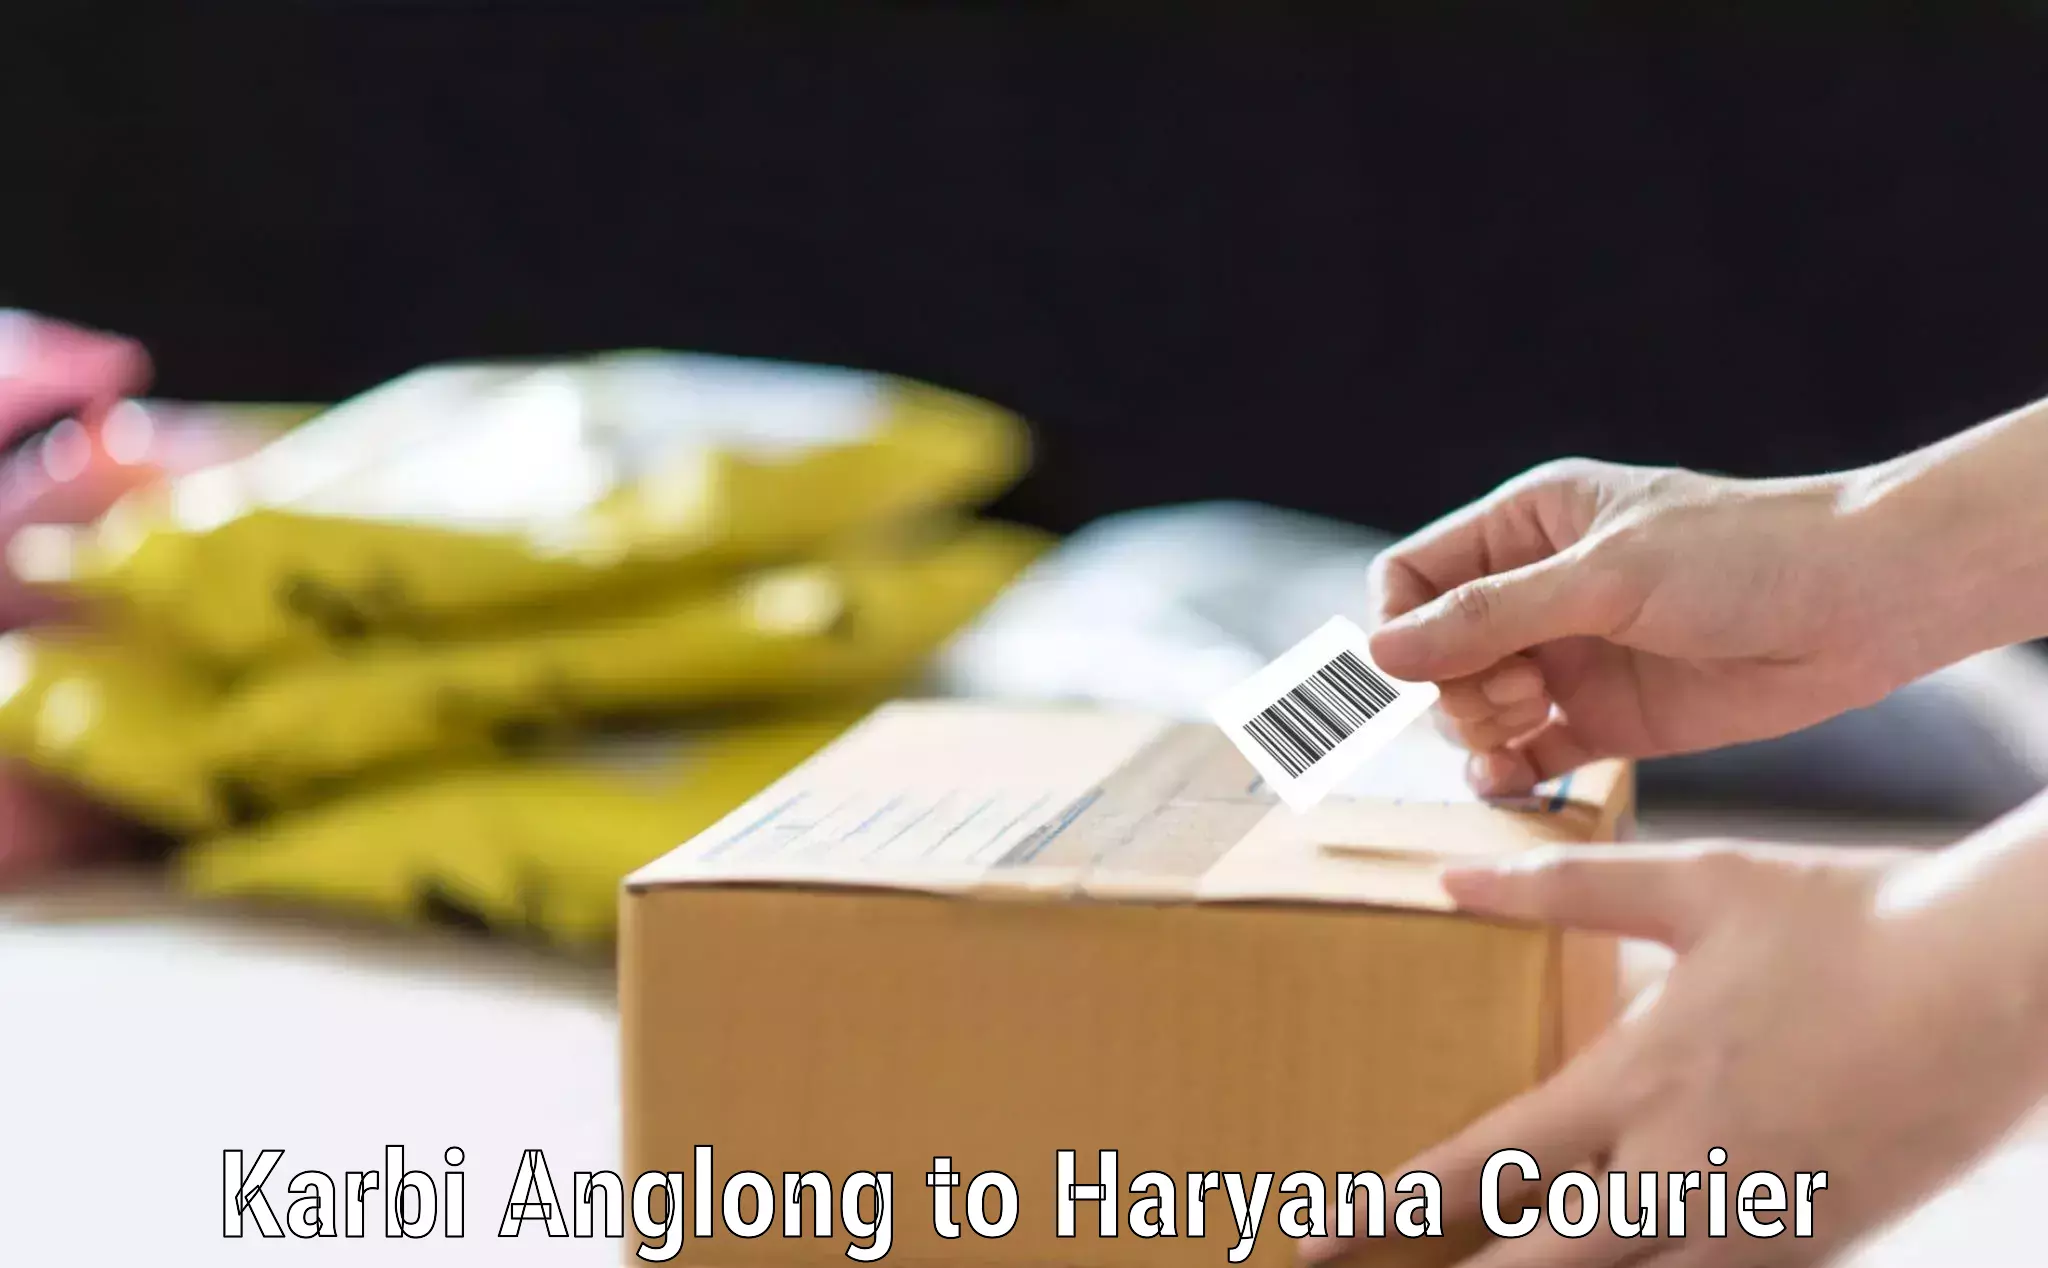 Single item baggage courier Karbi Anglong to Hansi